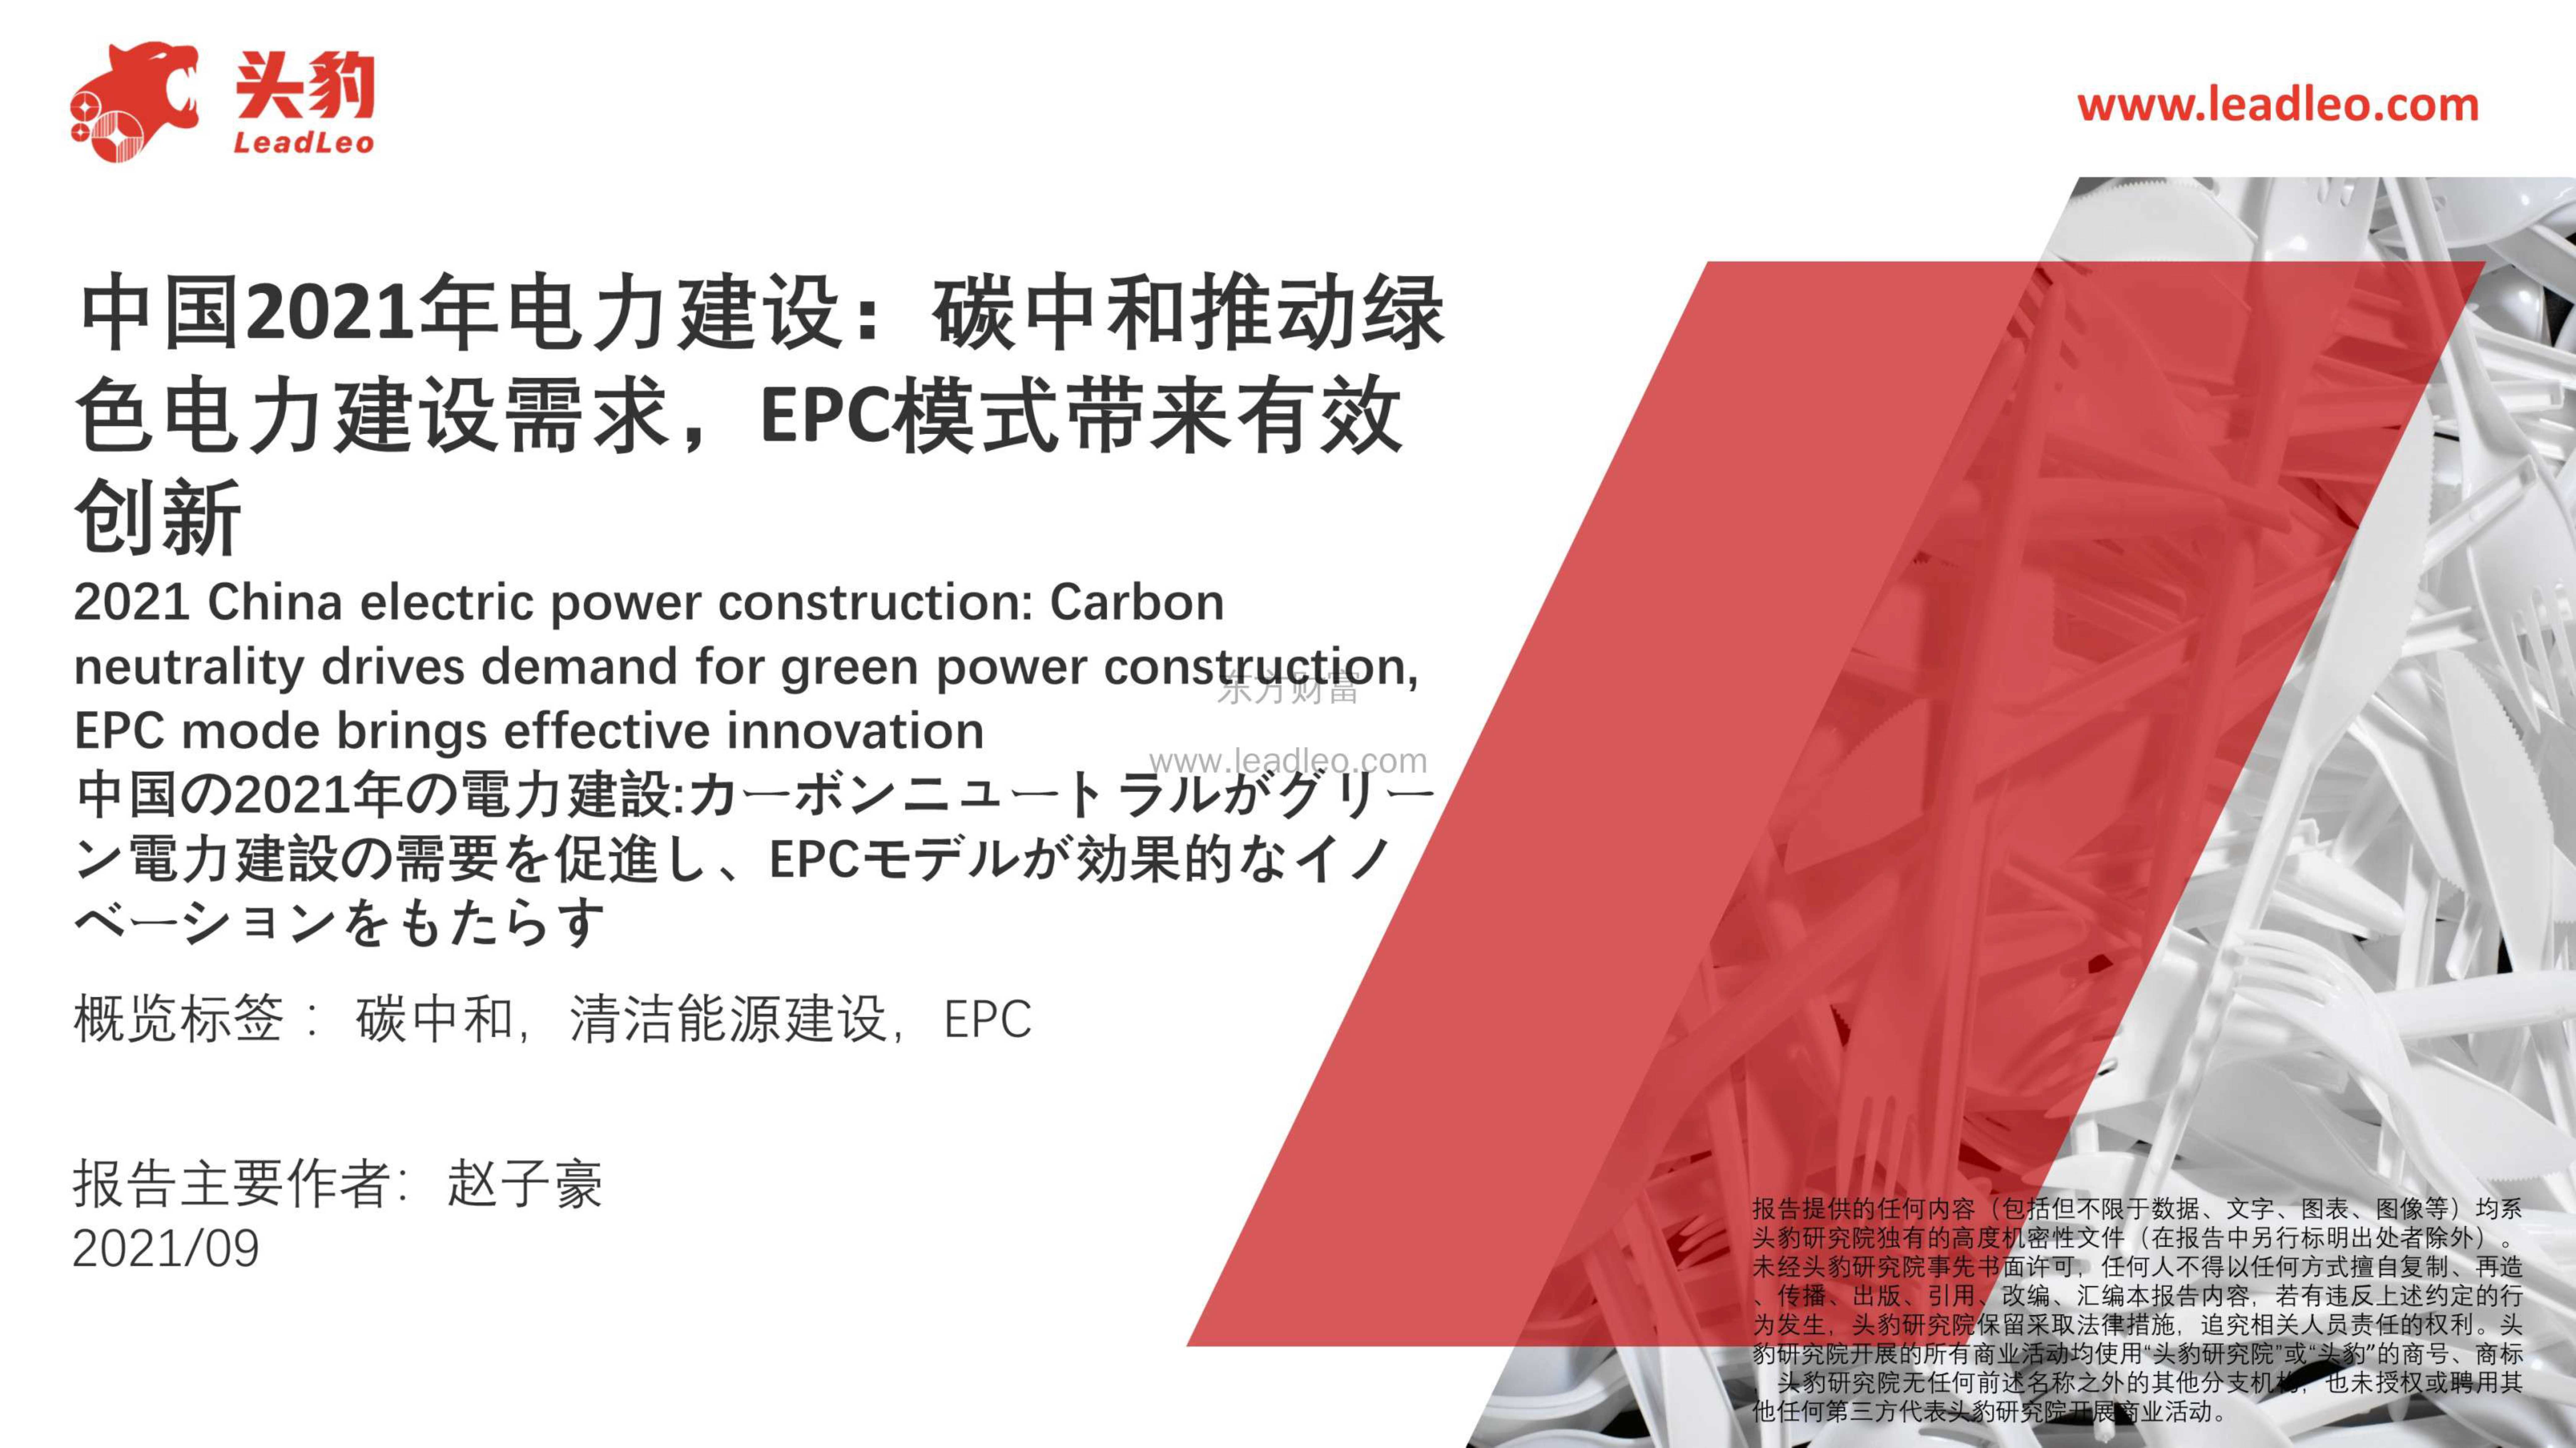 头豹研究院-中国2021年电力建设：碳中和推动绿色电力建设需求，EPC模式带来有效创新-2021.10-23页